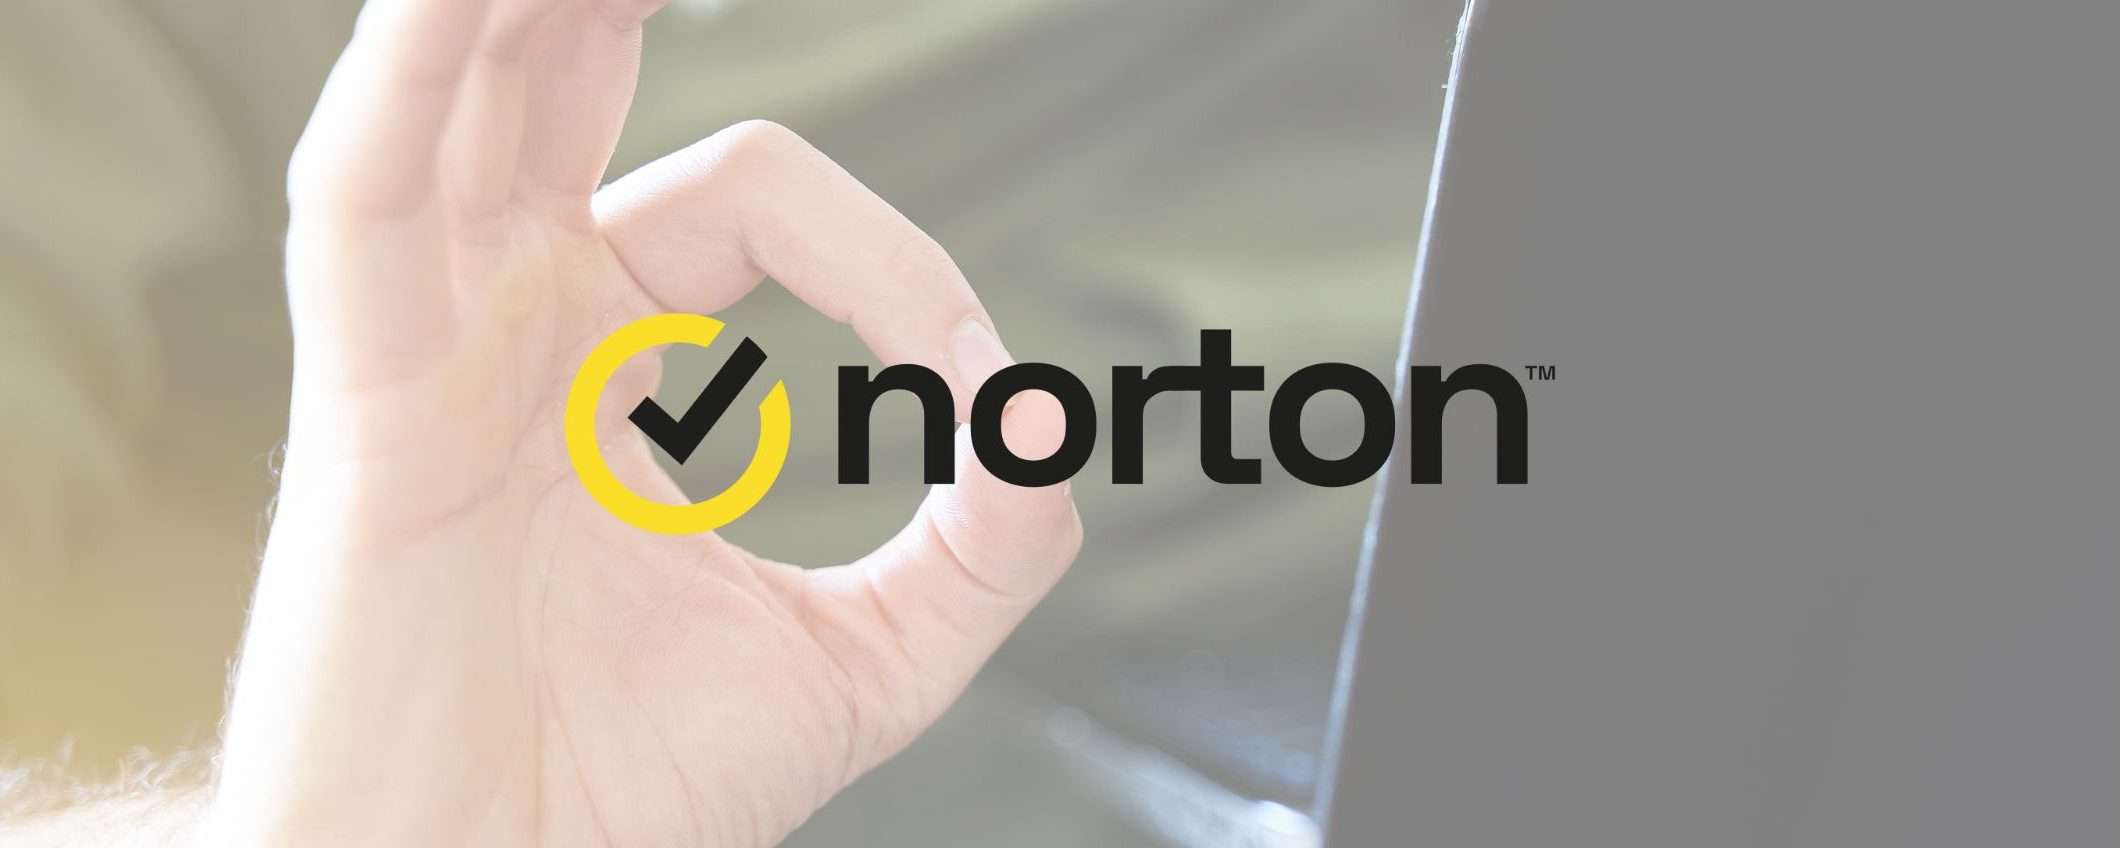 Norton Antivirus: ecco tutti i piani in sconto per il primo anno